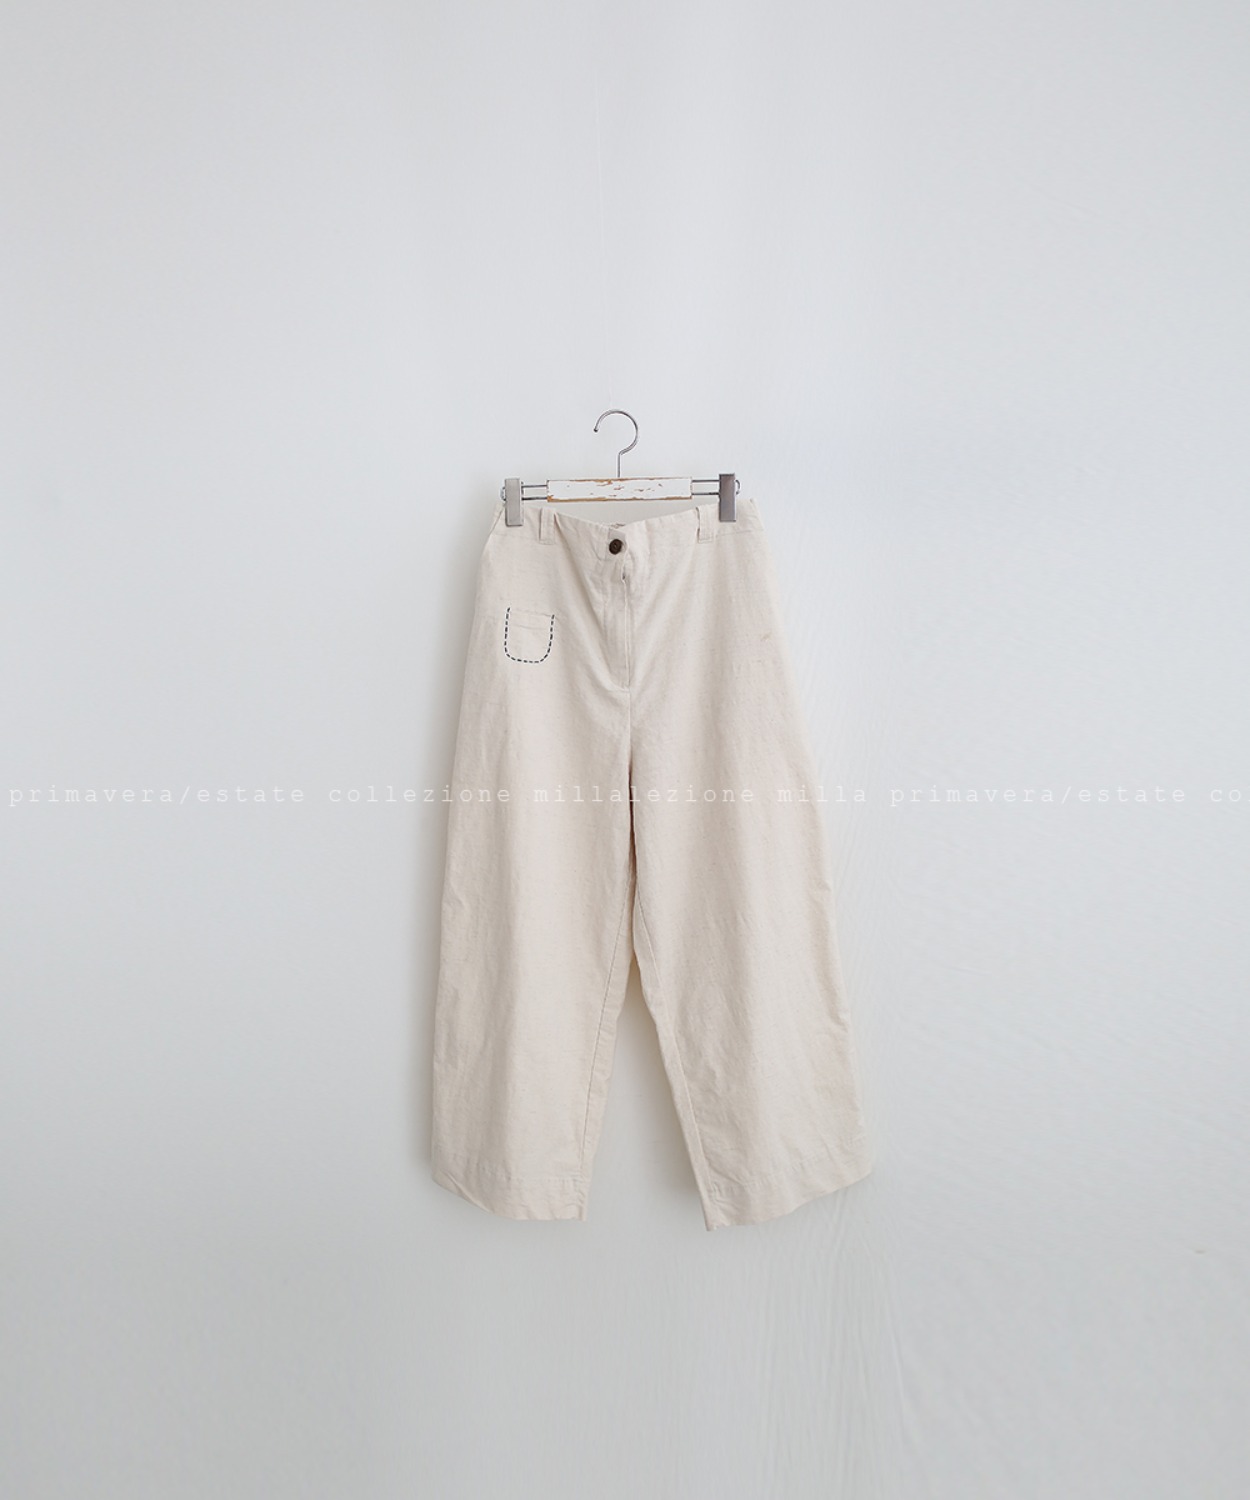 N°017 pants